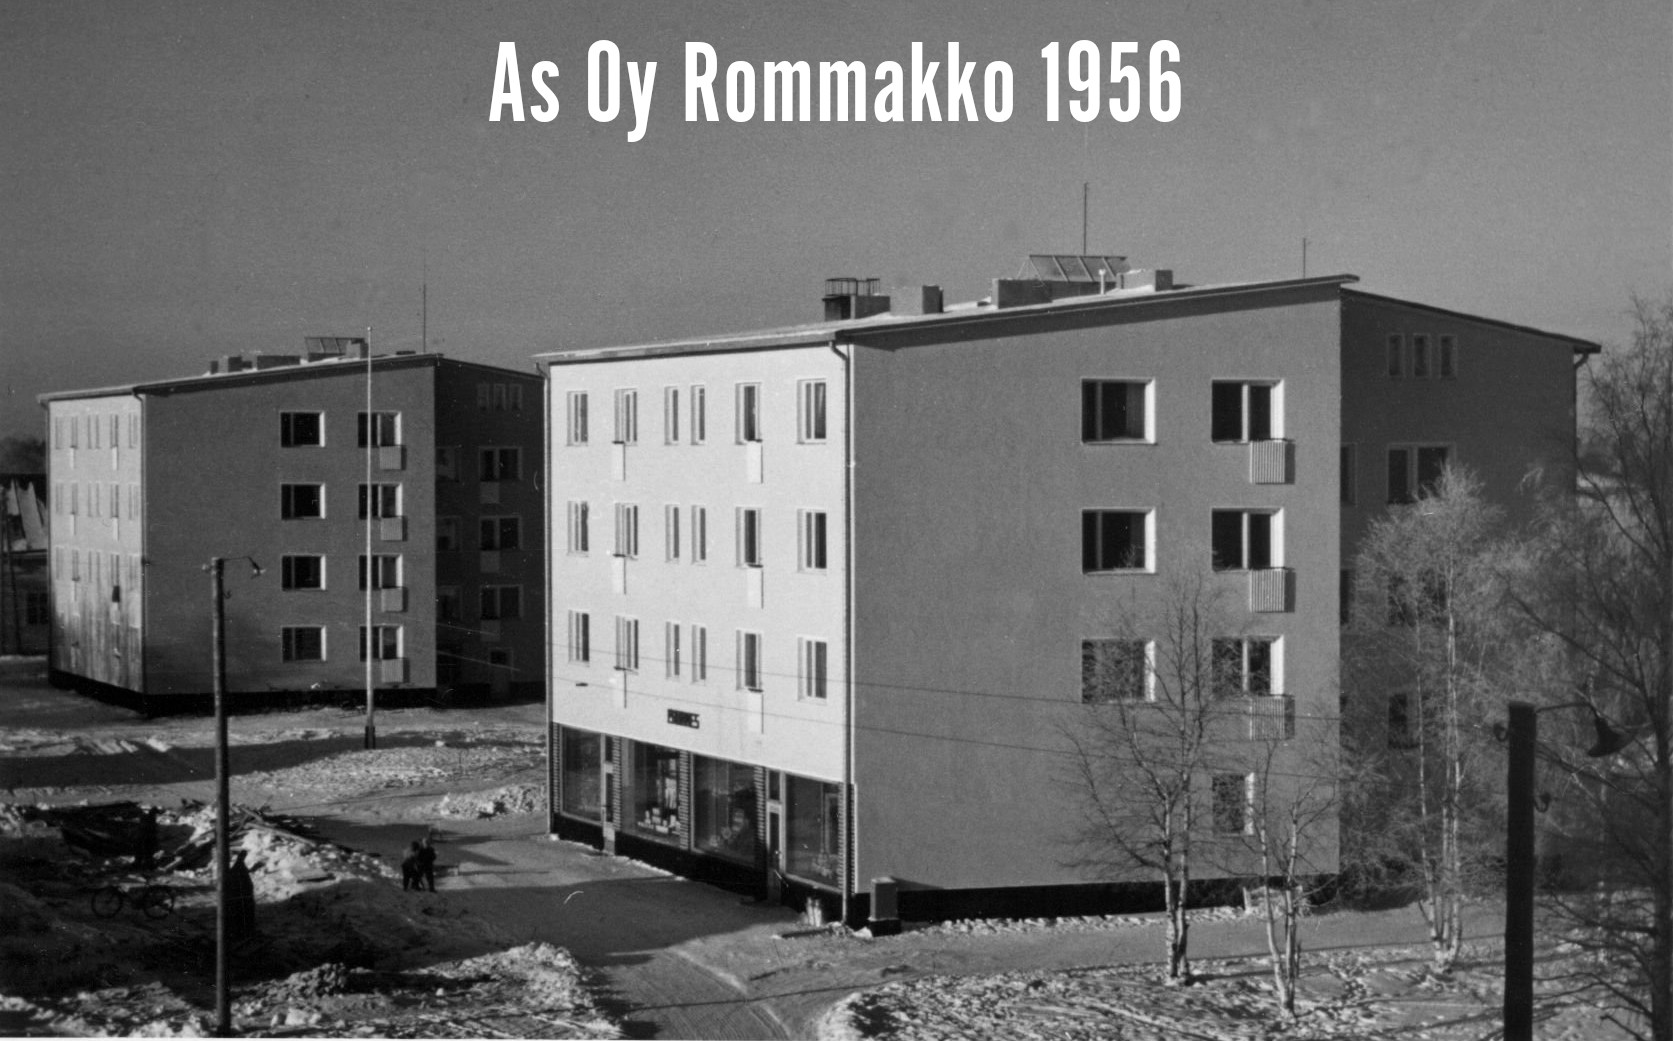 Rommakko 1956